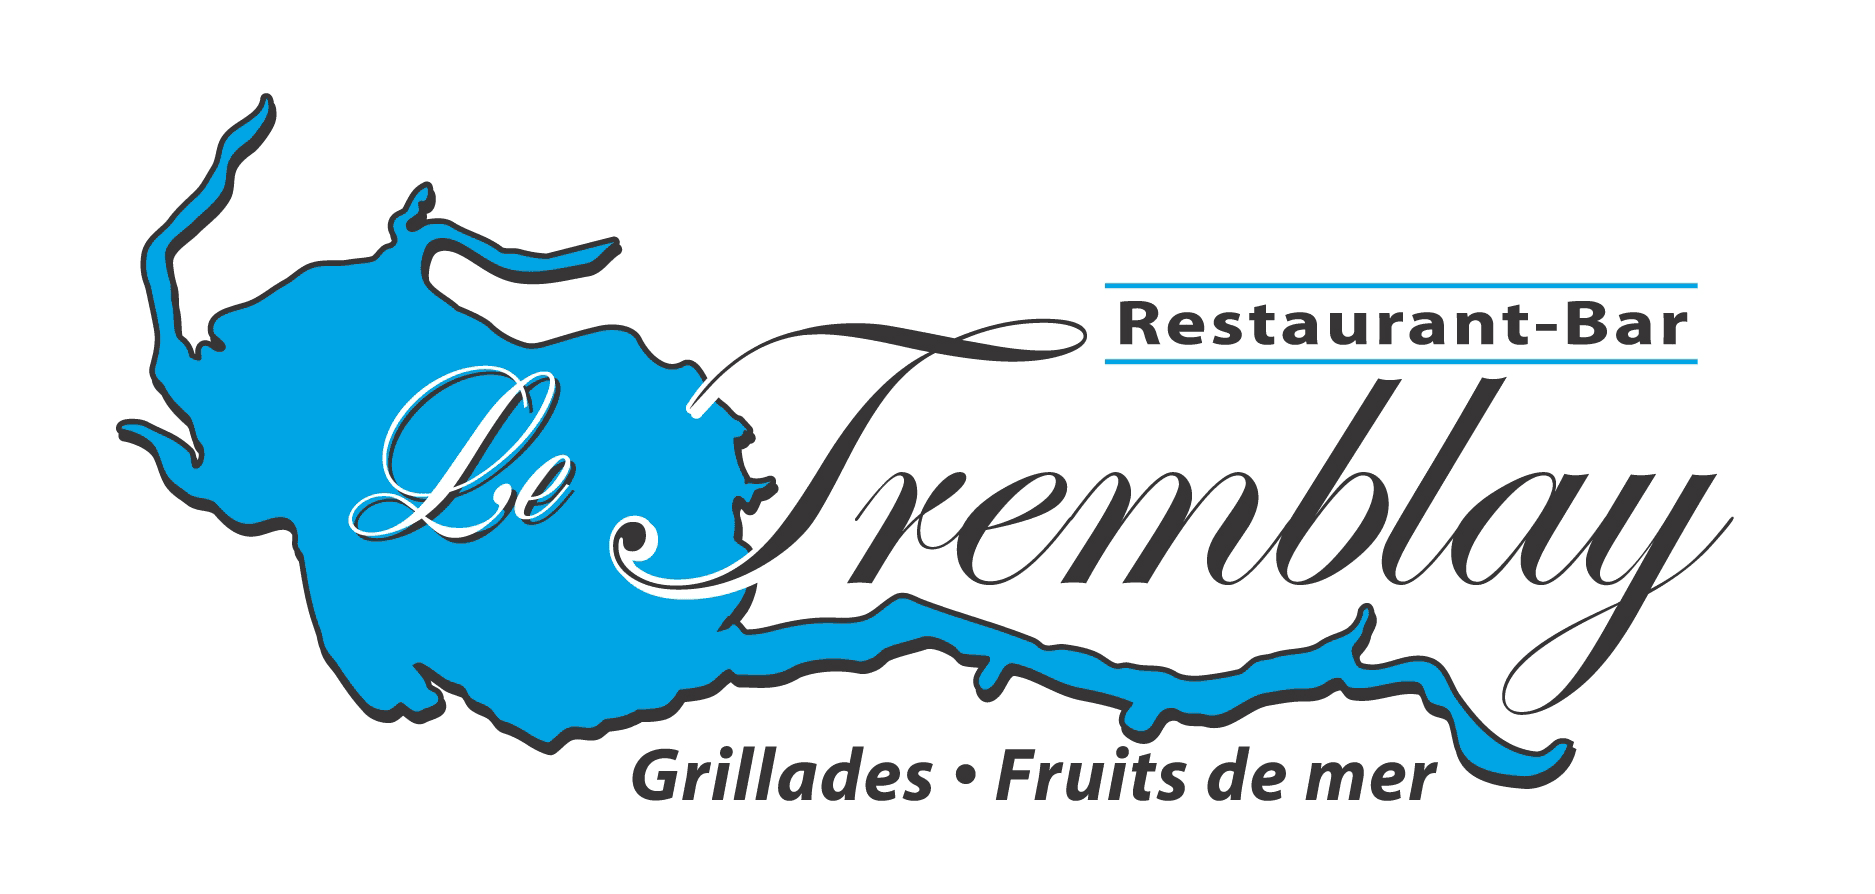 Restaurant-Bar Le Tremblay